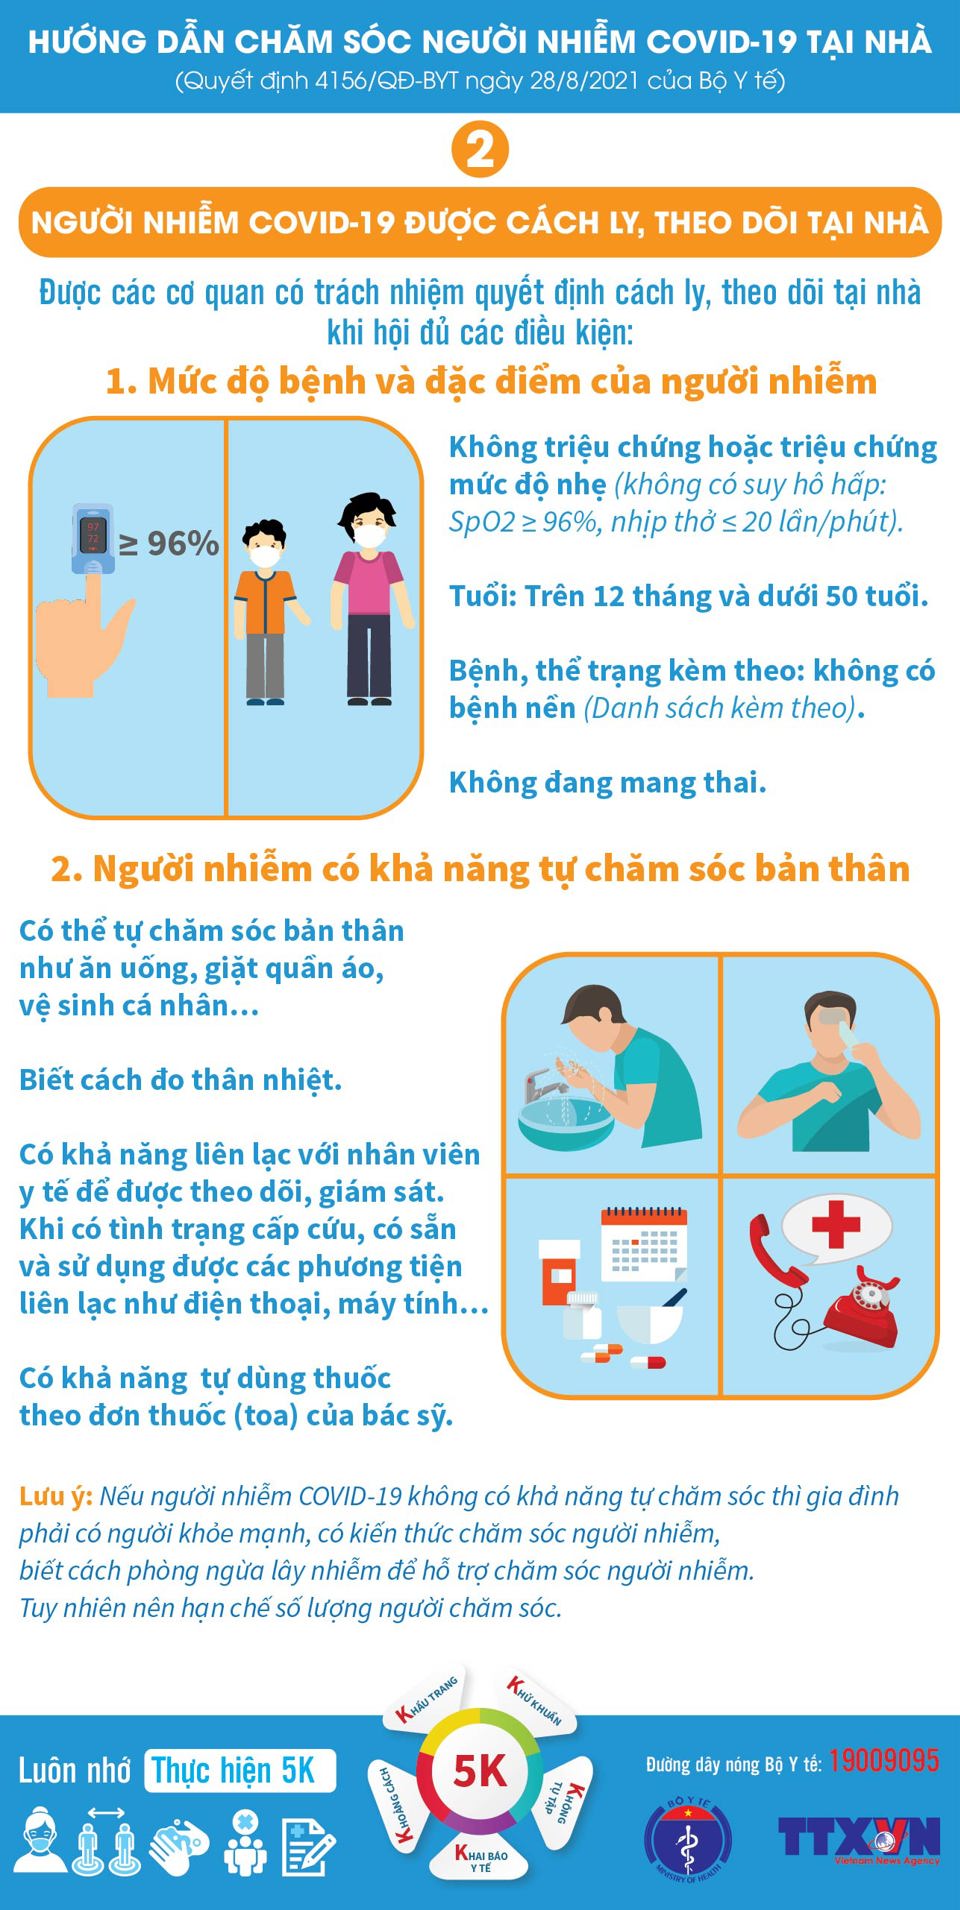 [Infographic] Những việc cần chuẩn bị để chăm sóc người nhiễm Covid-19 tại nhà - Ảnh 2